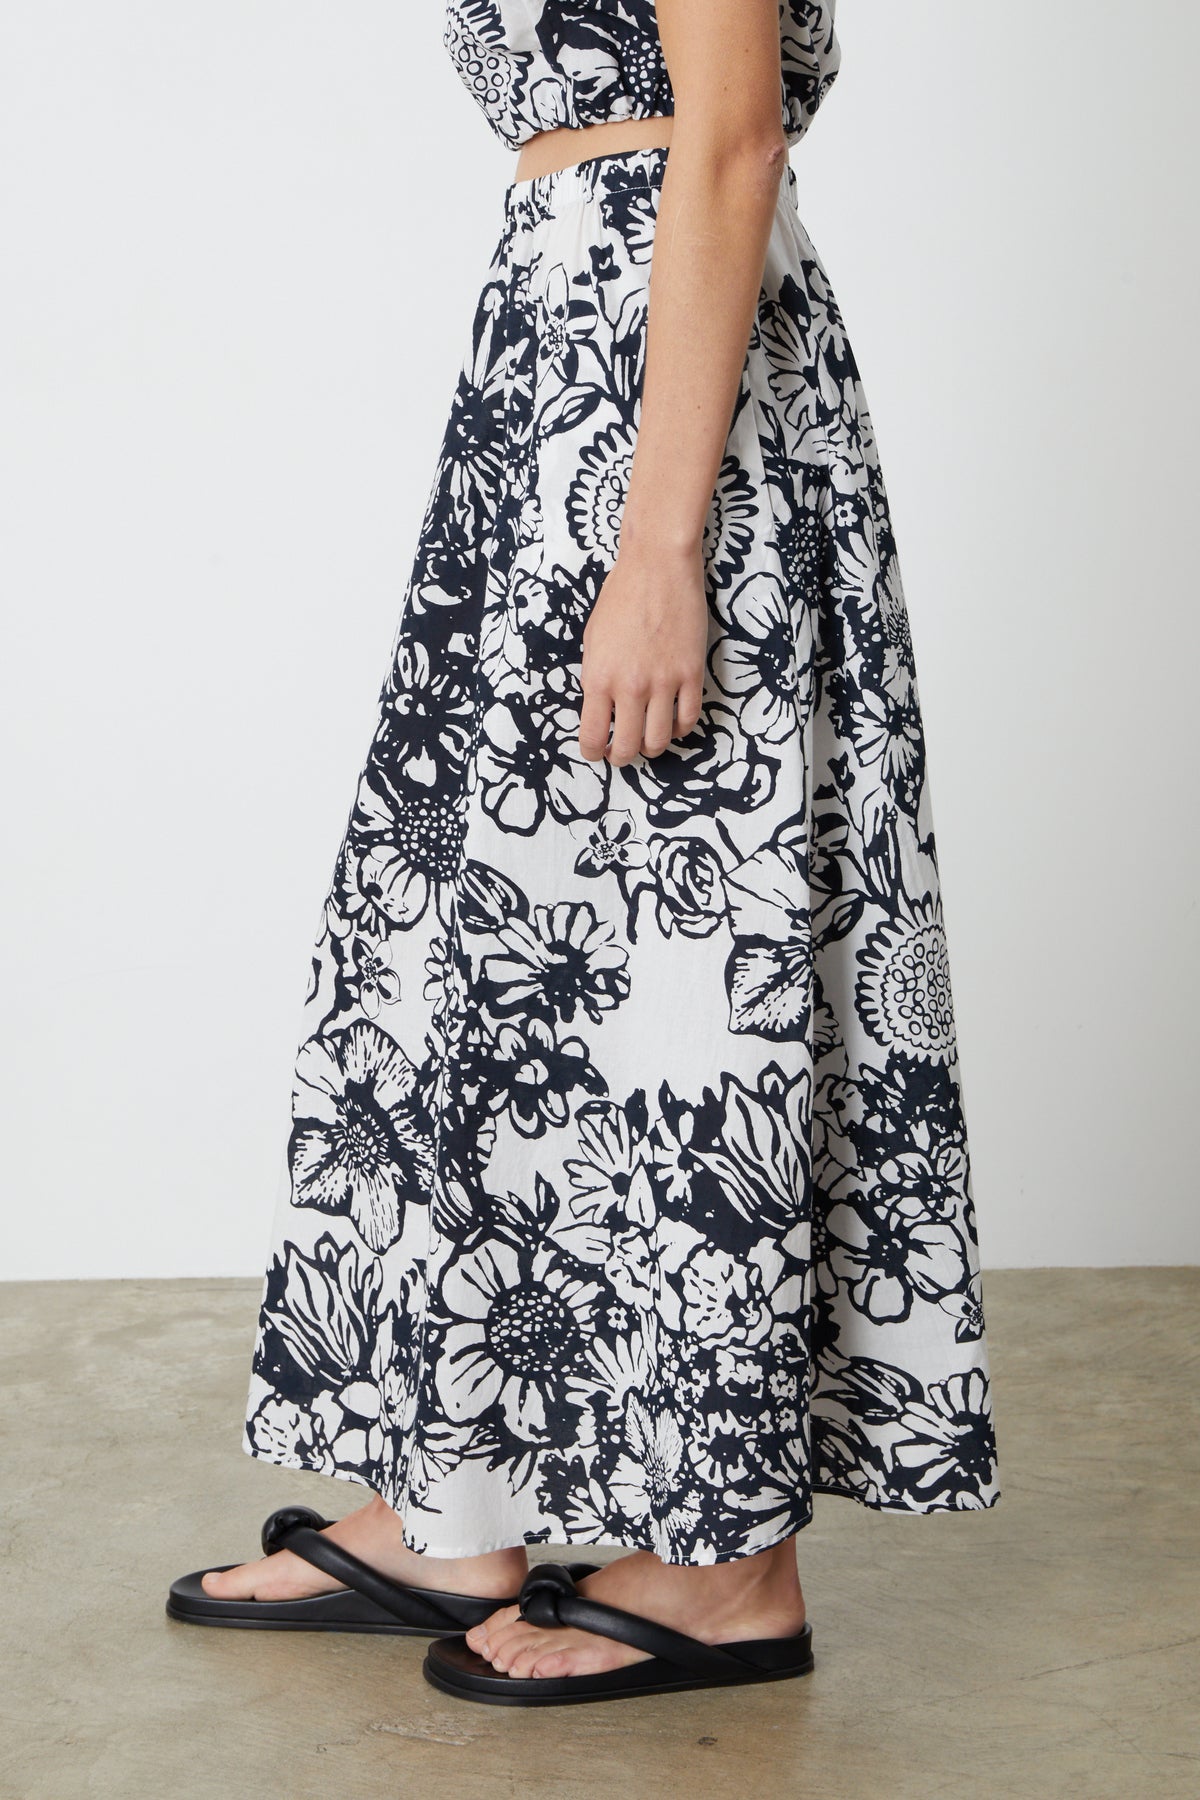   The model is wearing a Velvet by Graham & Spencer Juliana printed maxi skirt. 